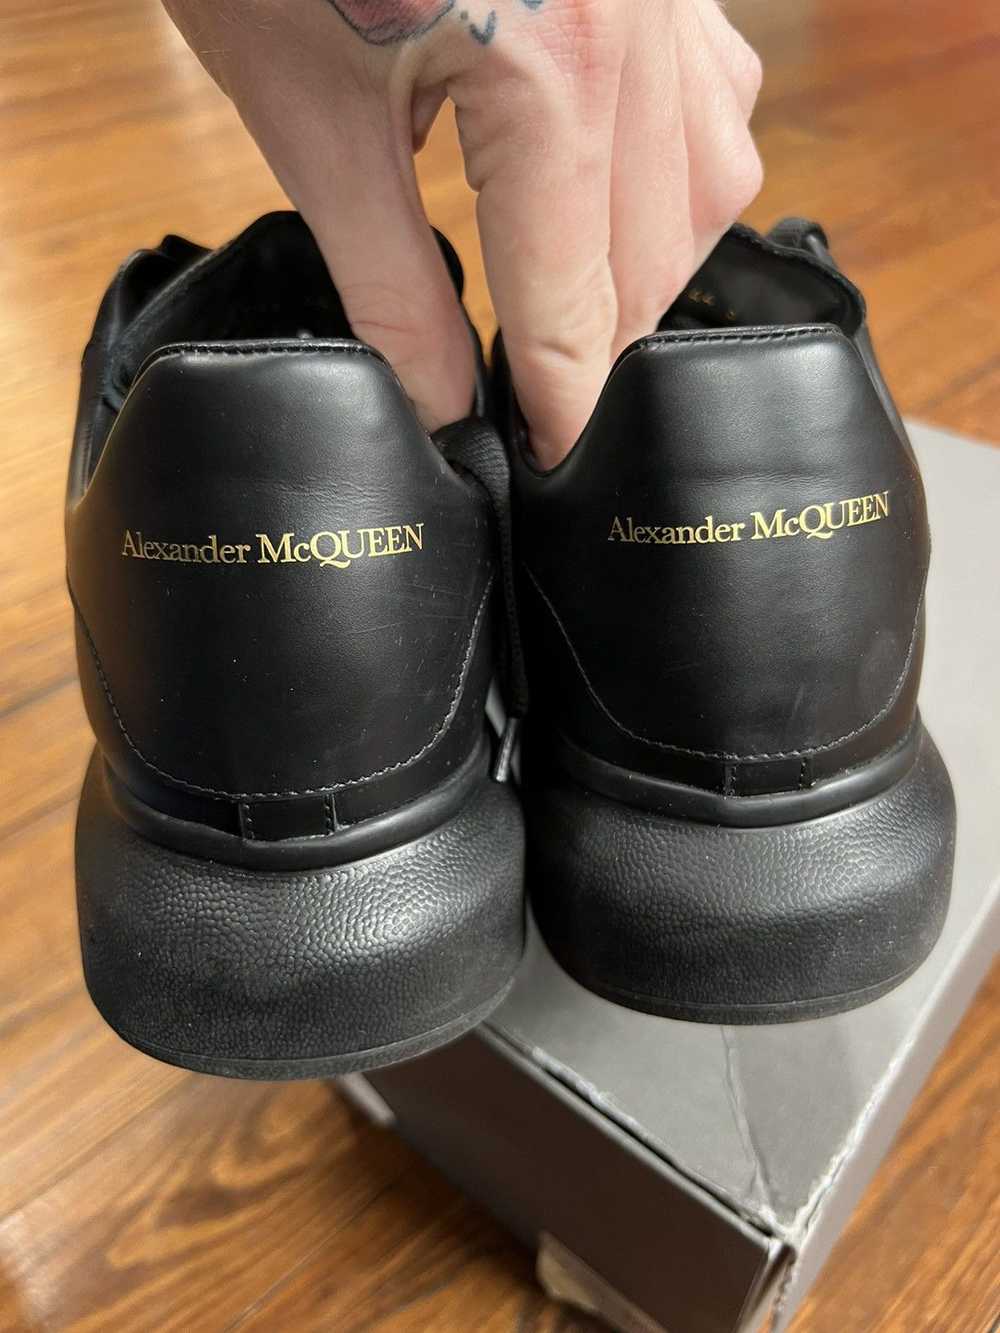 Alexander McQueen Alexander McQueen Oversized Bla… - image 4